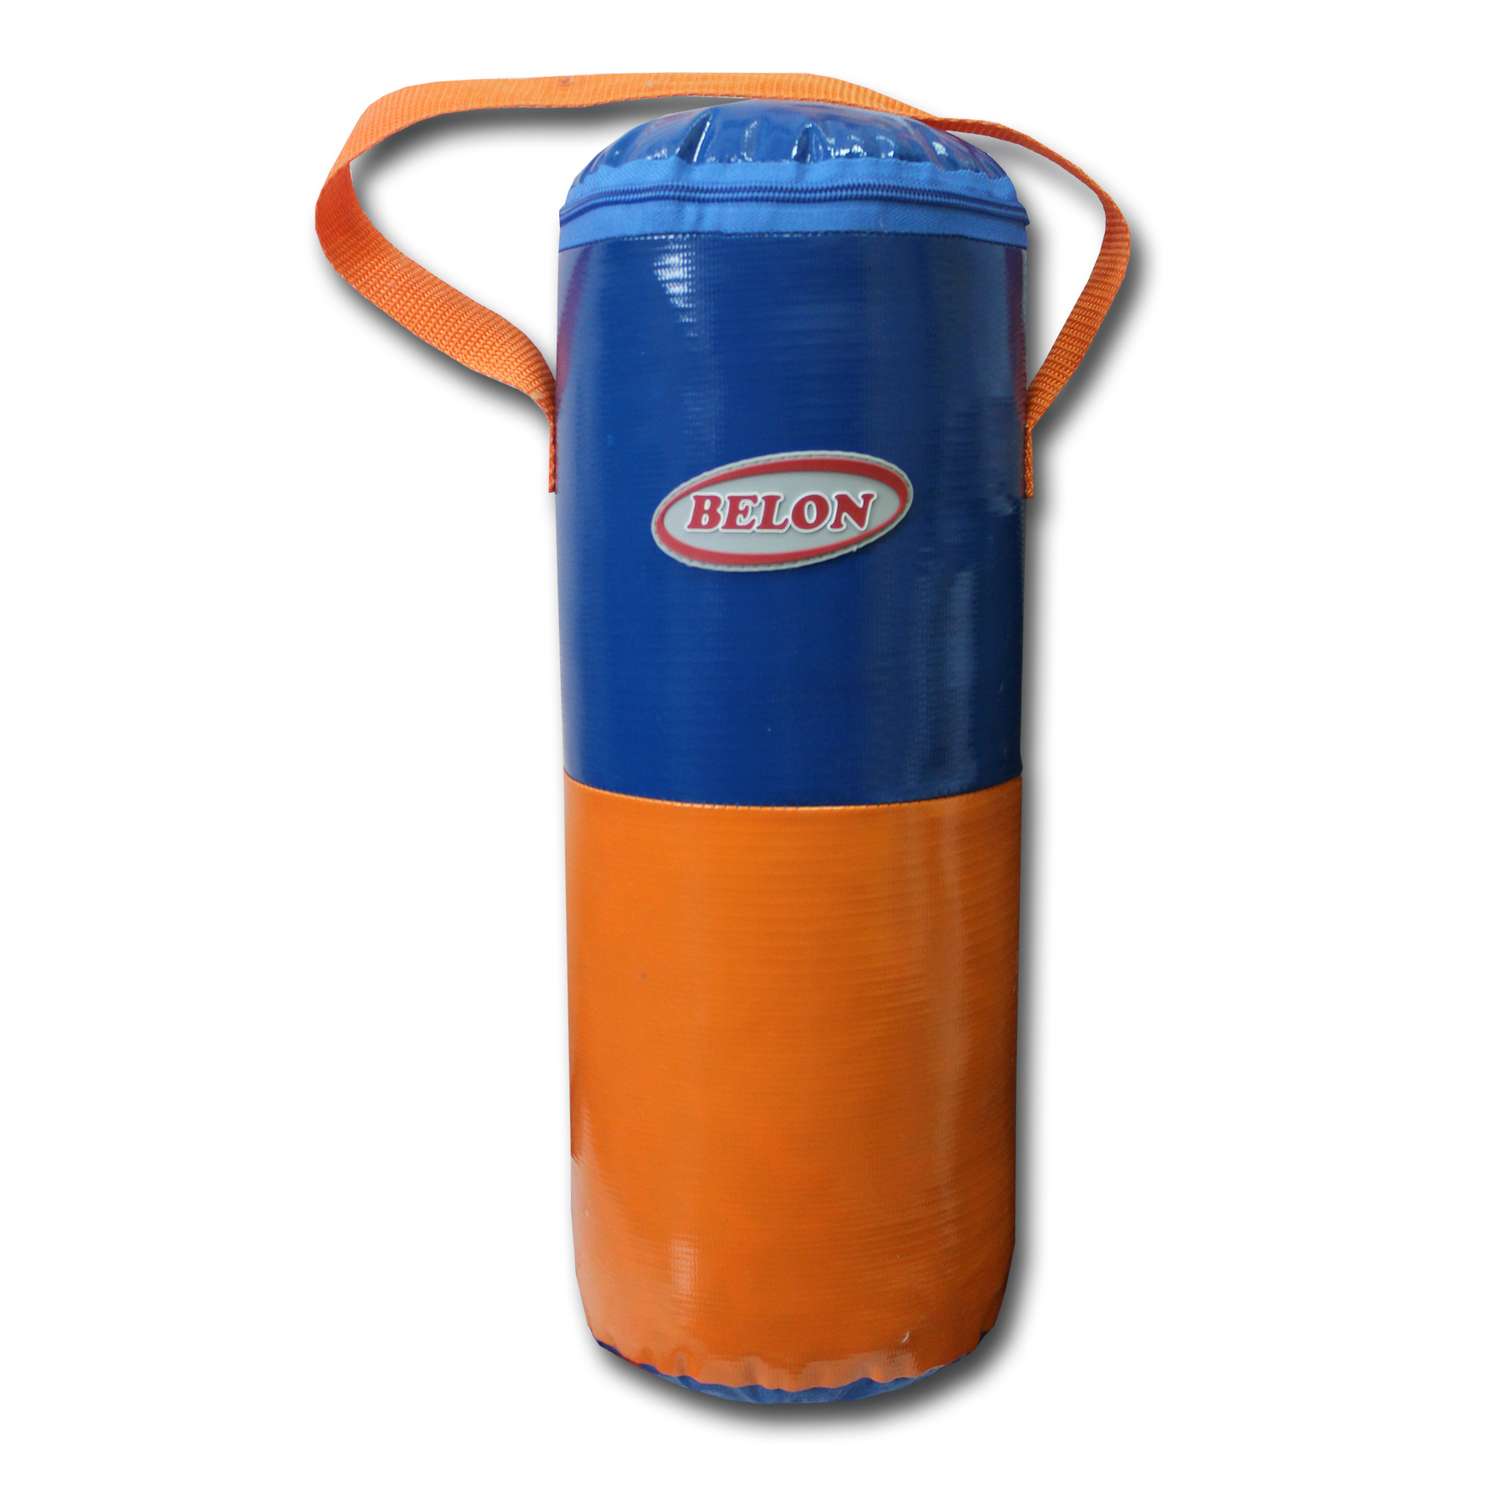 Груша для бокса Belon familia малая цилиндр Цвет оранжевый-синий - фото 1